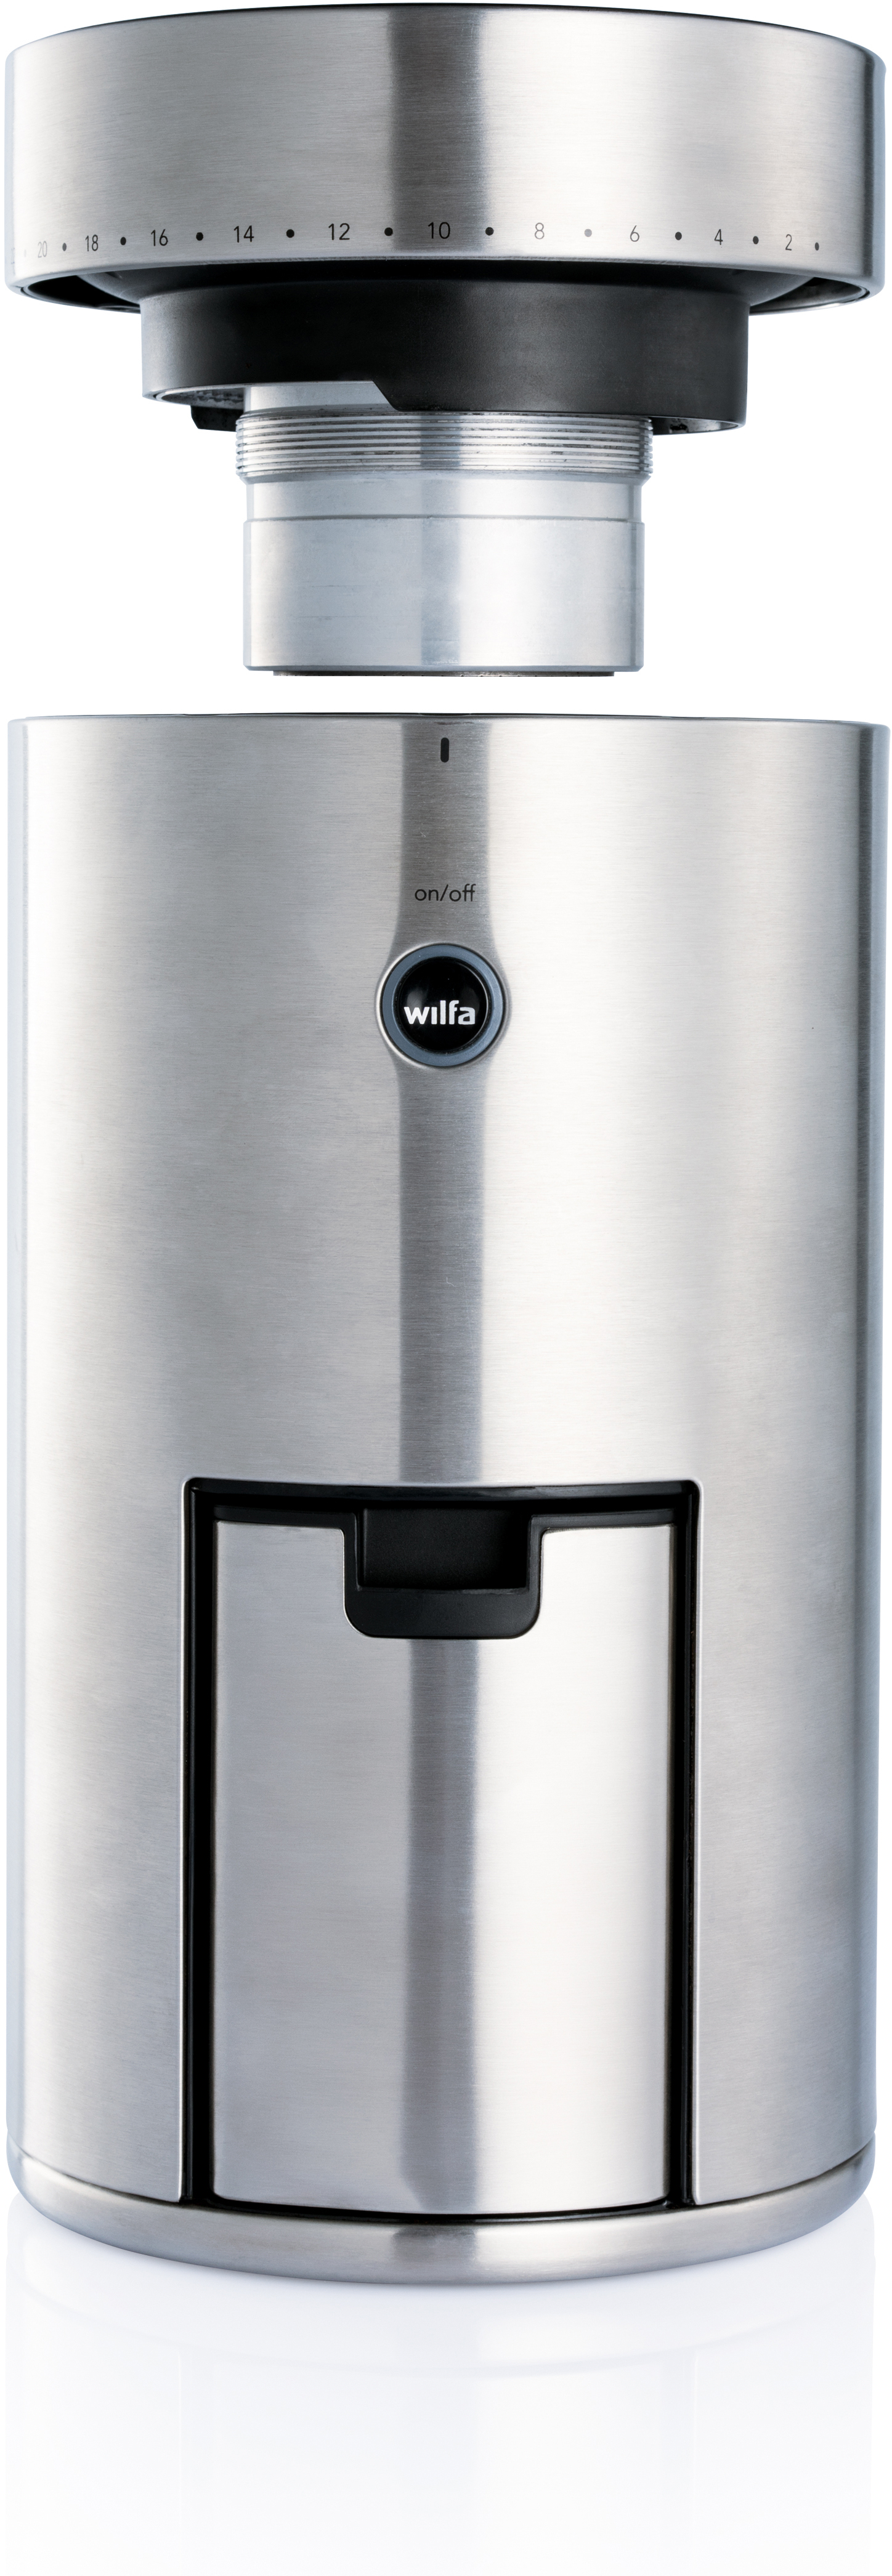 WILFA Svart des 58 Langlebiges mm (80 Scheibenmahlwerk Mahlgrads) Watt, 41 großes Silber WSFB-100S Einstellungen Uniform aus Edelstahl, Kaffeemühle